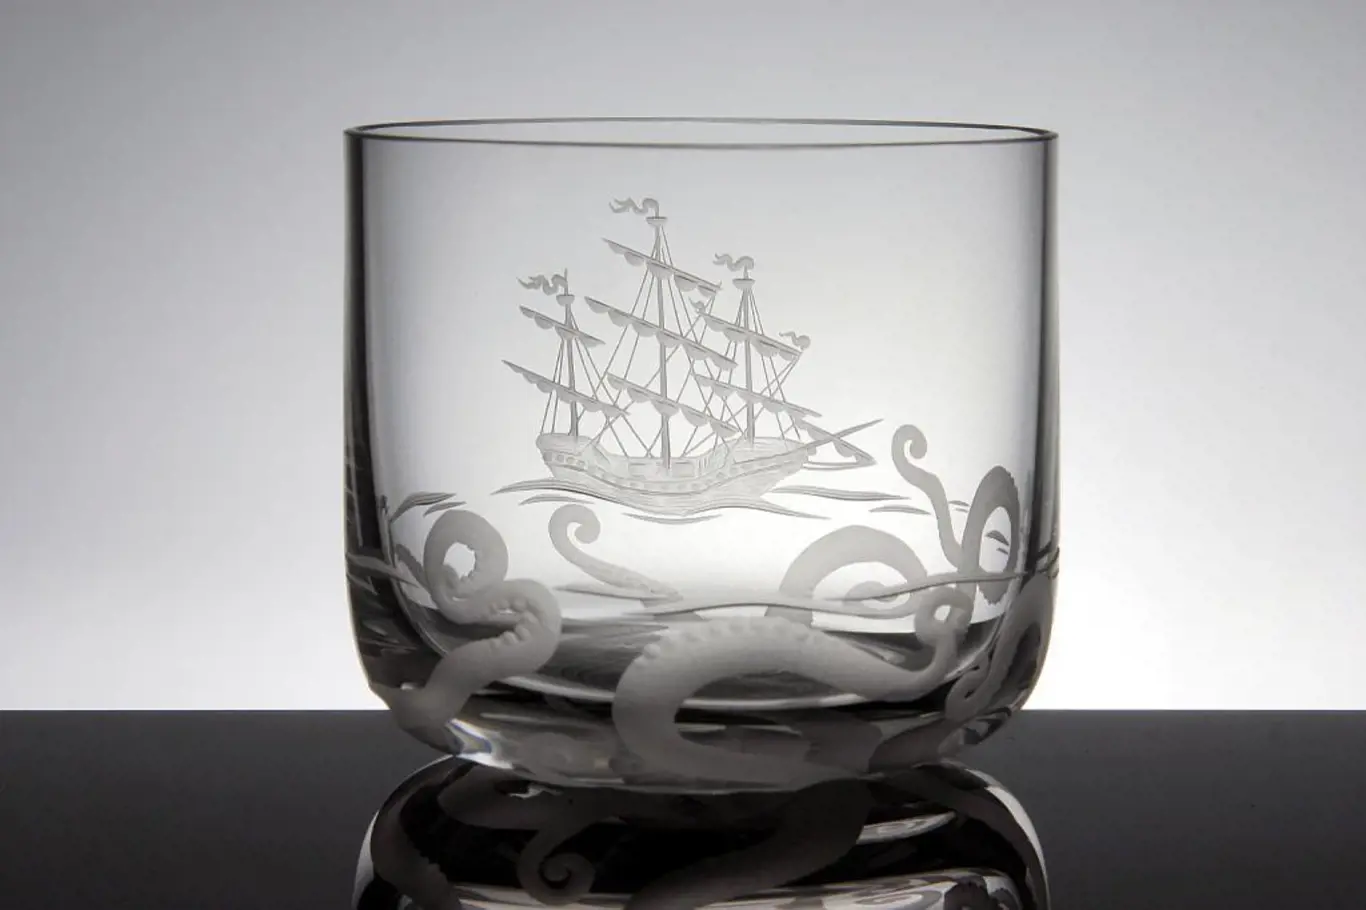 Ryté nápojové sklo z kolekce On the sea